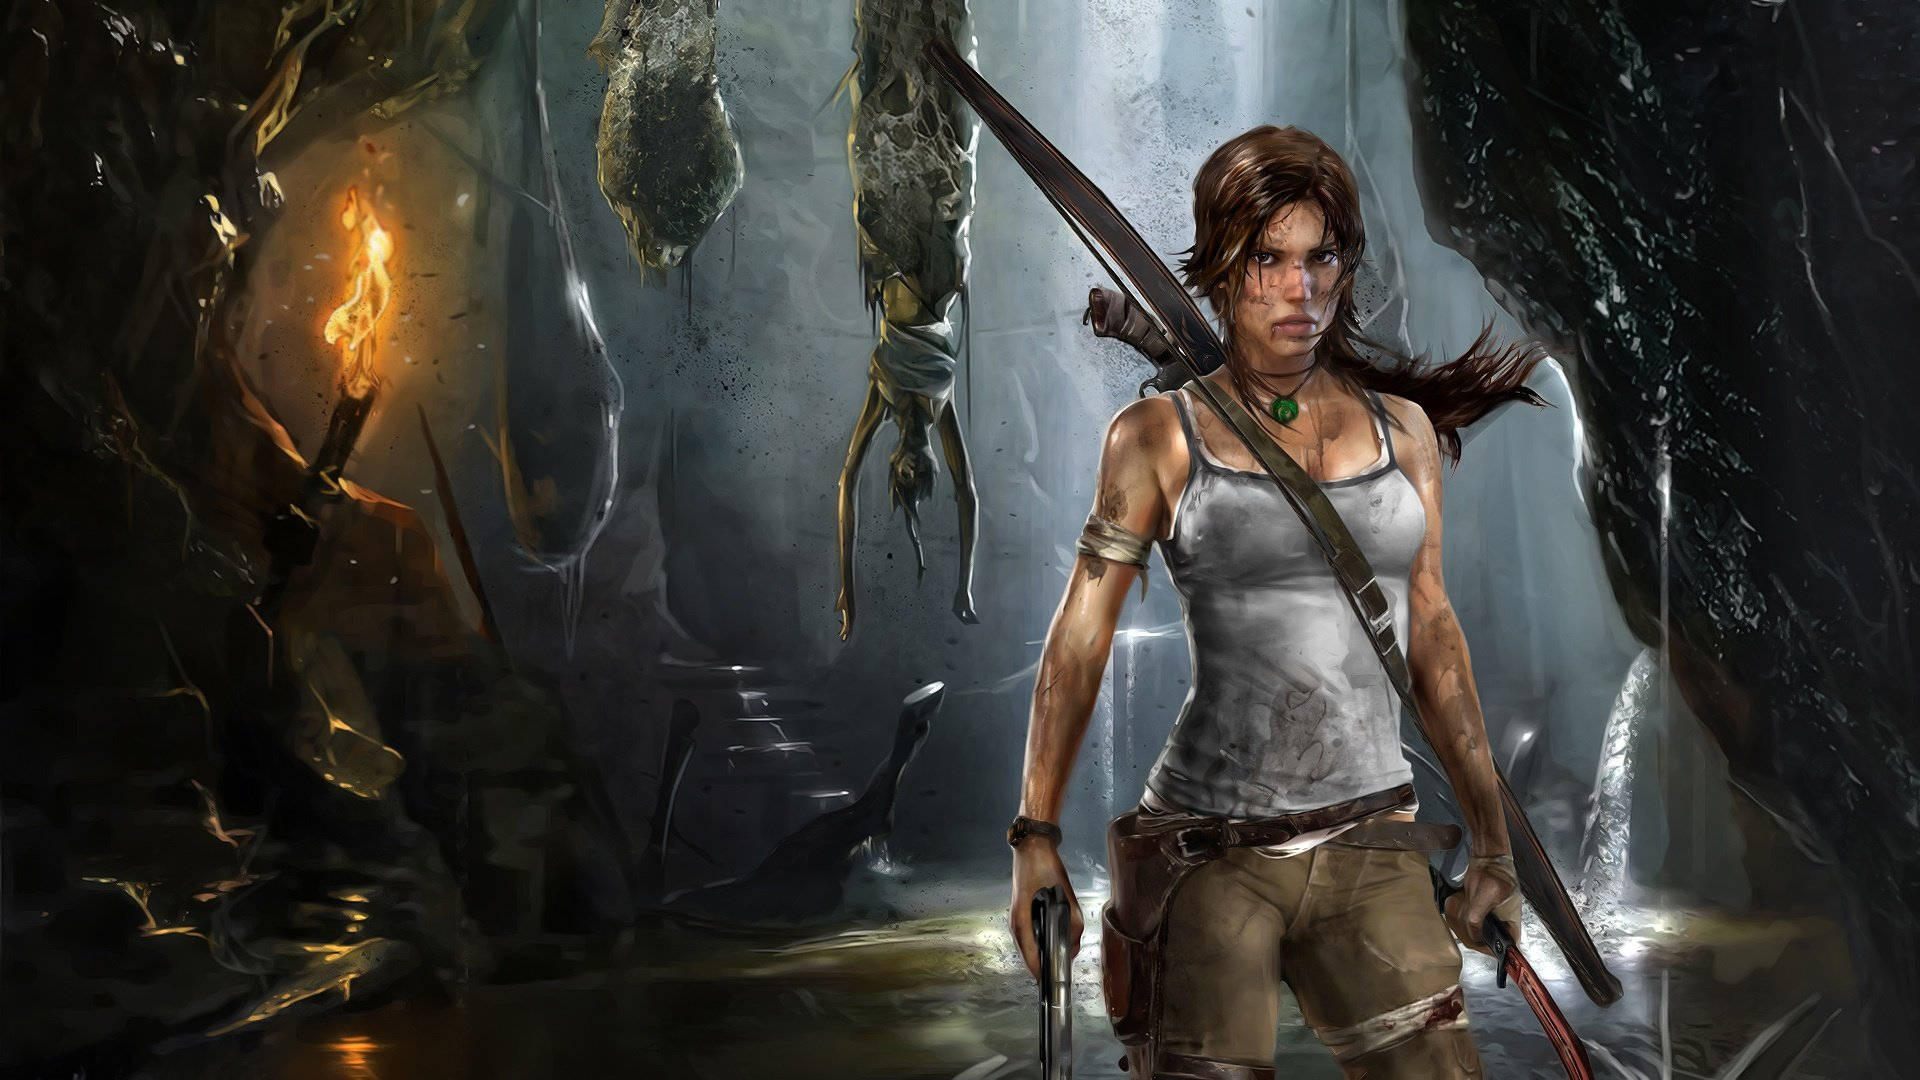 Frygtinducerende Lara fra Tomb Raider spillet Wallpaper